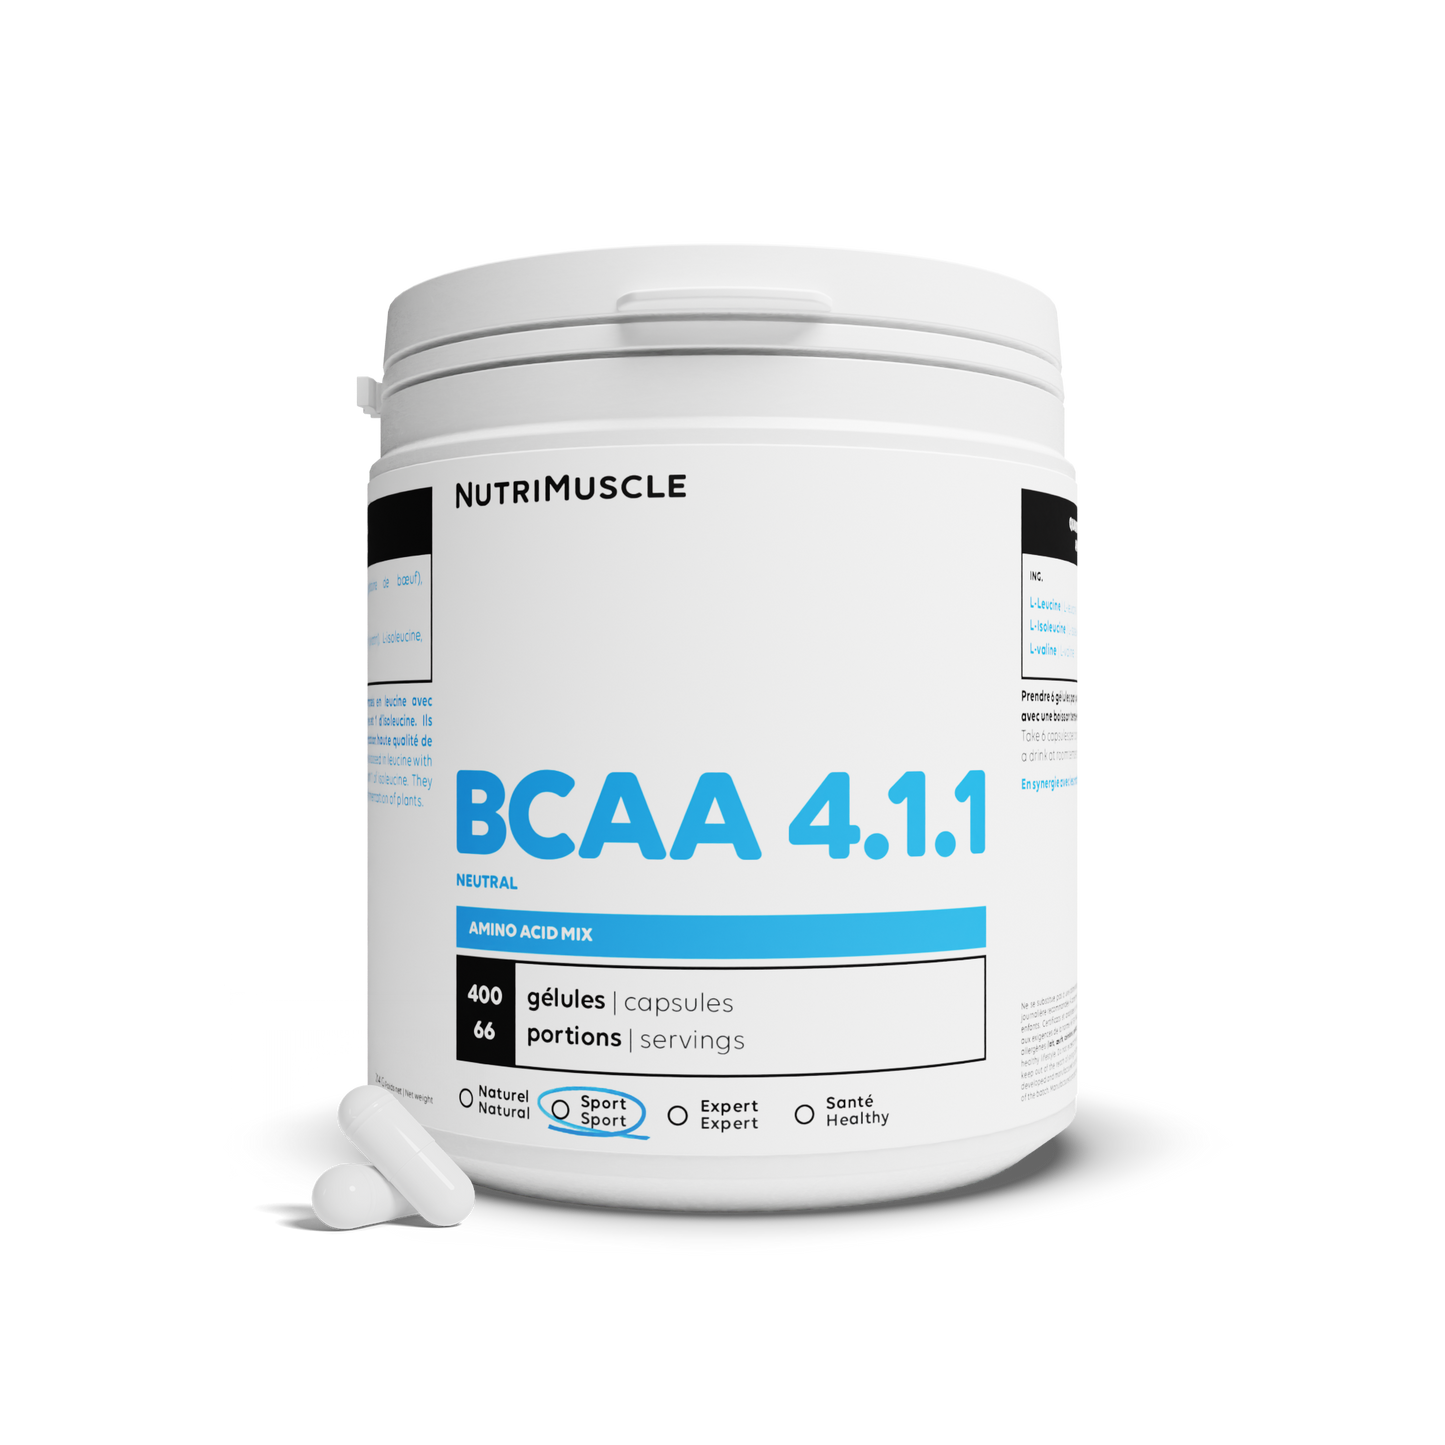 BCAA 4.1.1 Produttori in capsule